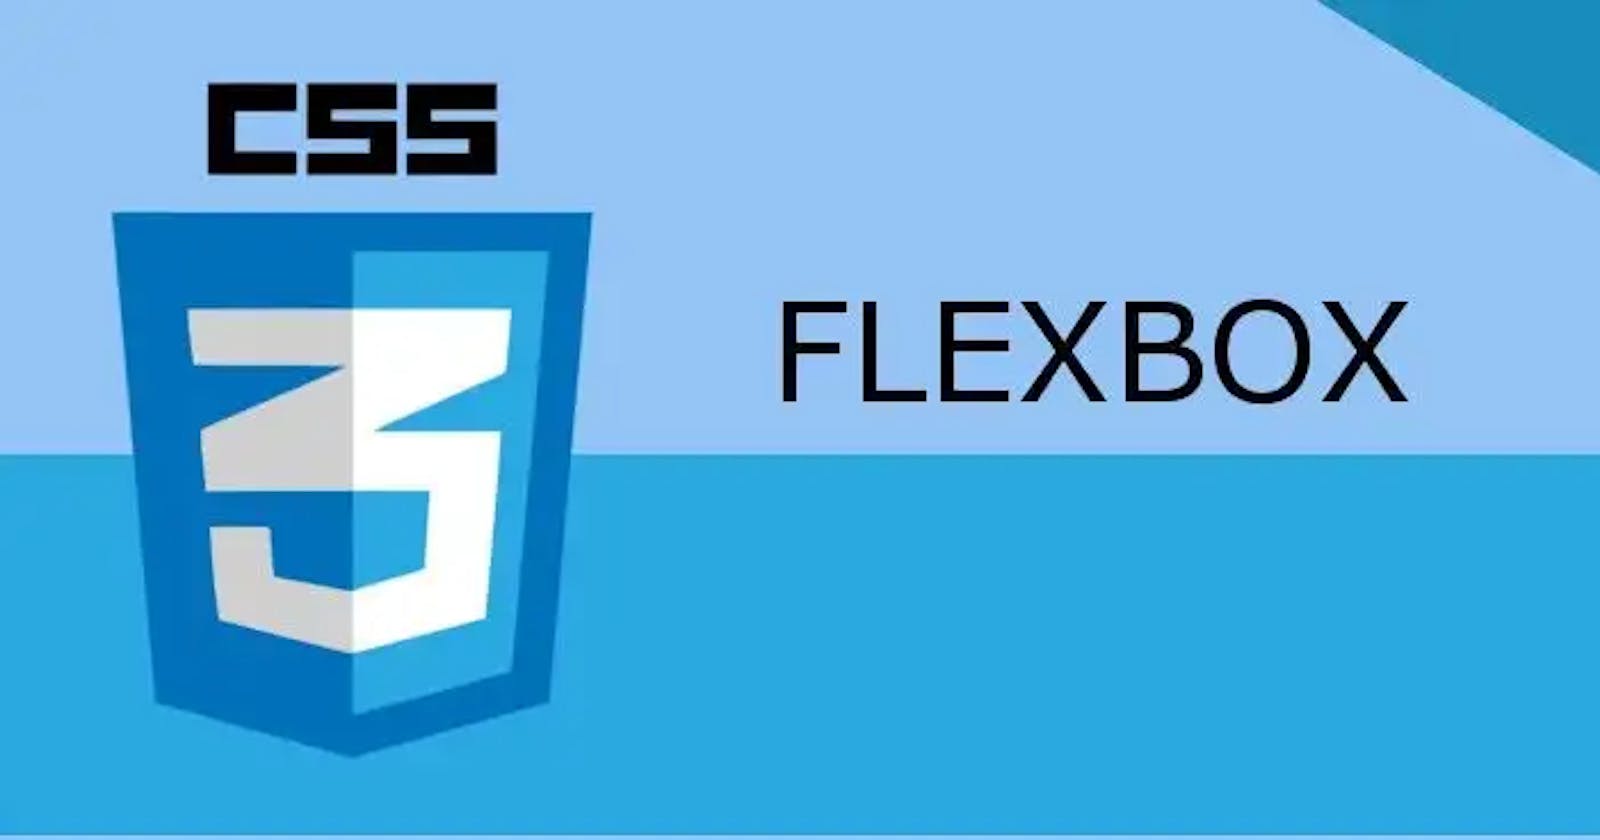 CSS FLEXBOX(Flexible Box)